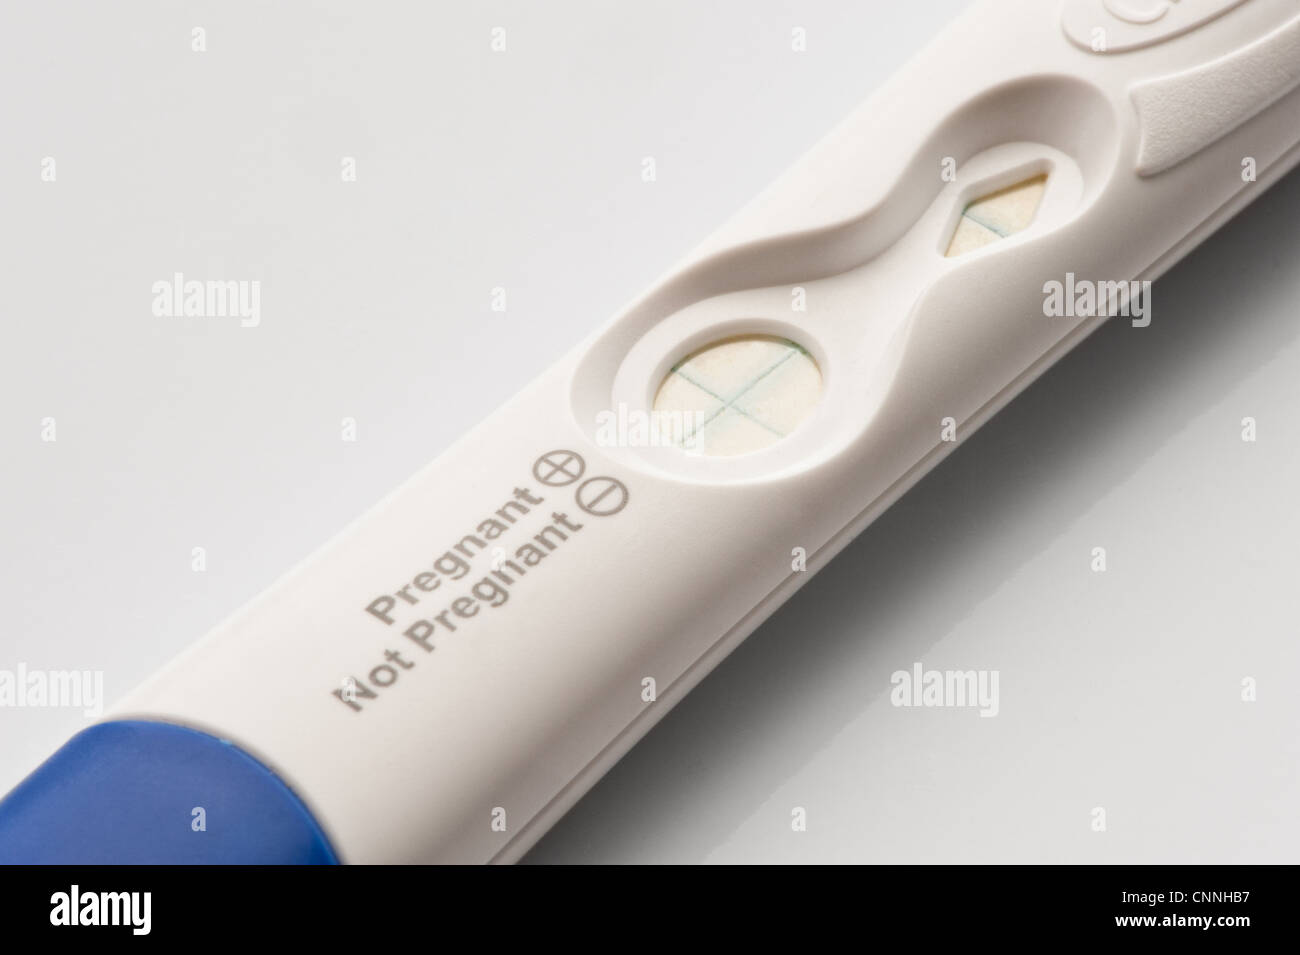 Un bianco al test di gravidanza stick con un tappo blu che mostra un risultato positivo. Foto Stock